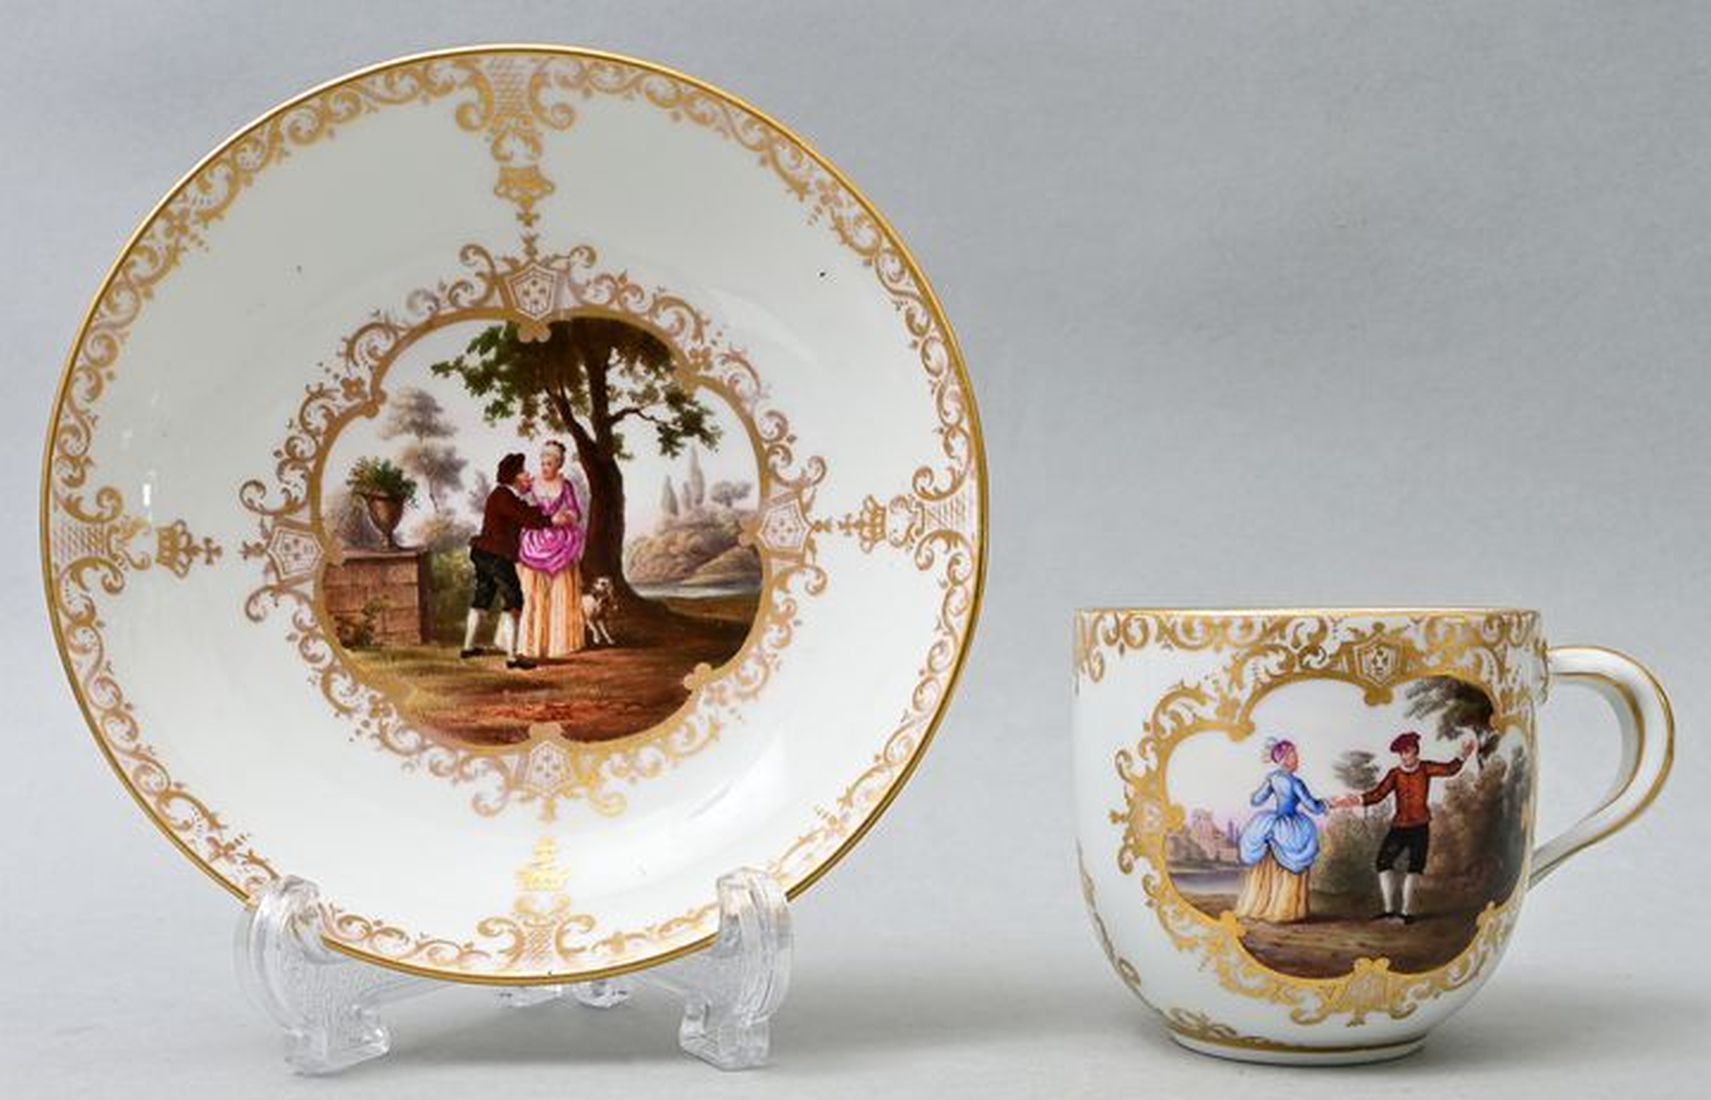 Null 杯子和碟子，迈森，19世纪 瓷器，光滑的边缘形式，带有编织的树枝把手，装饰有房屋绘画。在bandelwerk框架中的多色储备，风景中的人物画。金色的边&hellip;